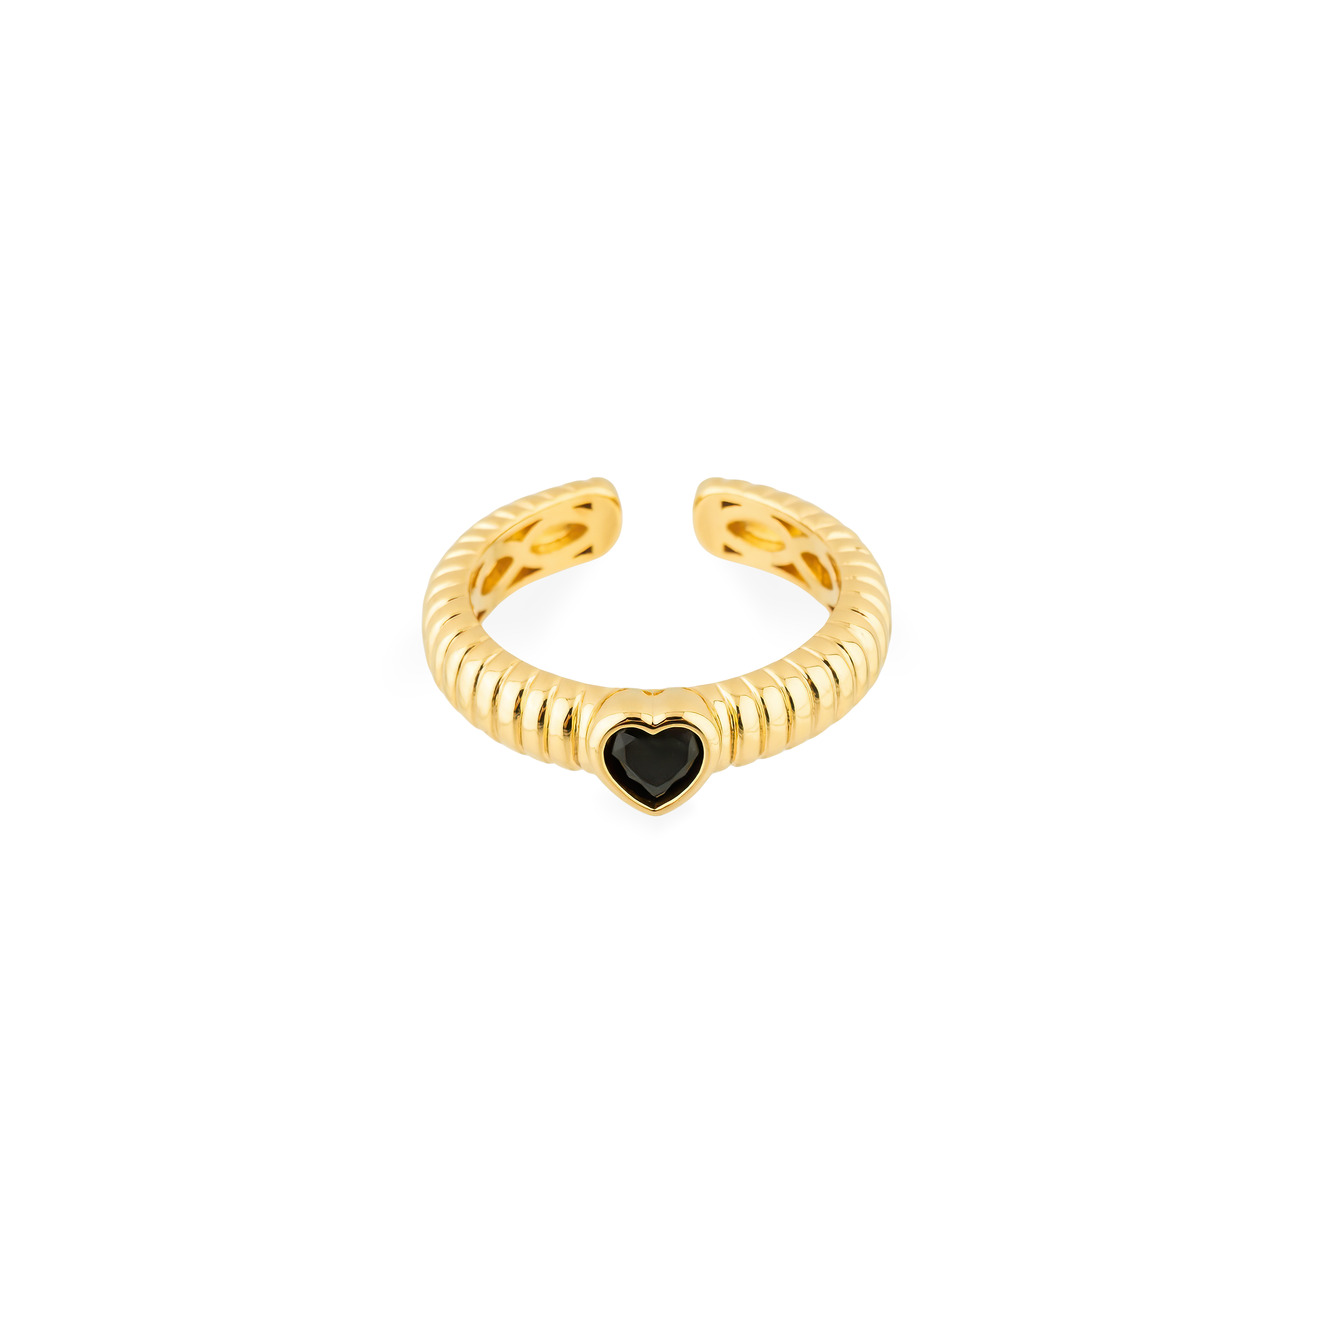 Herald Percy Золотистое фигурное кольцо с черным сердцем herald percy золотистое фигурное кольцо с черным сердцем